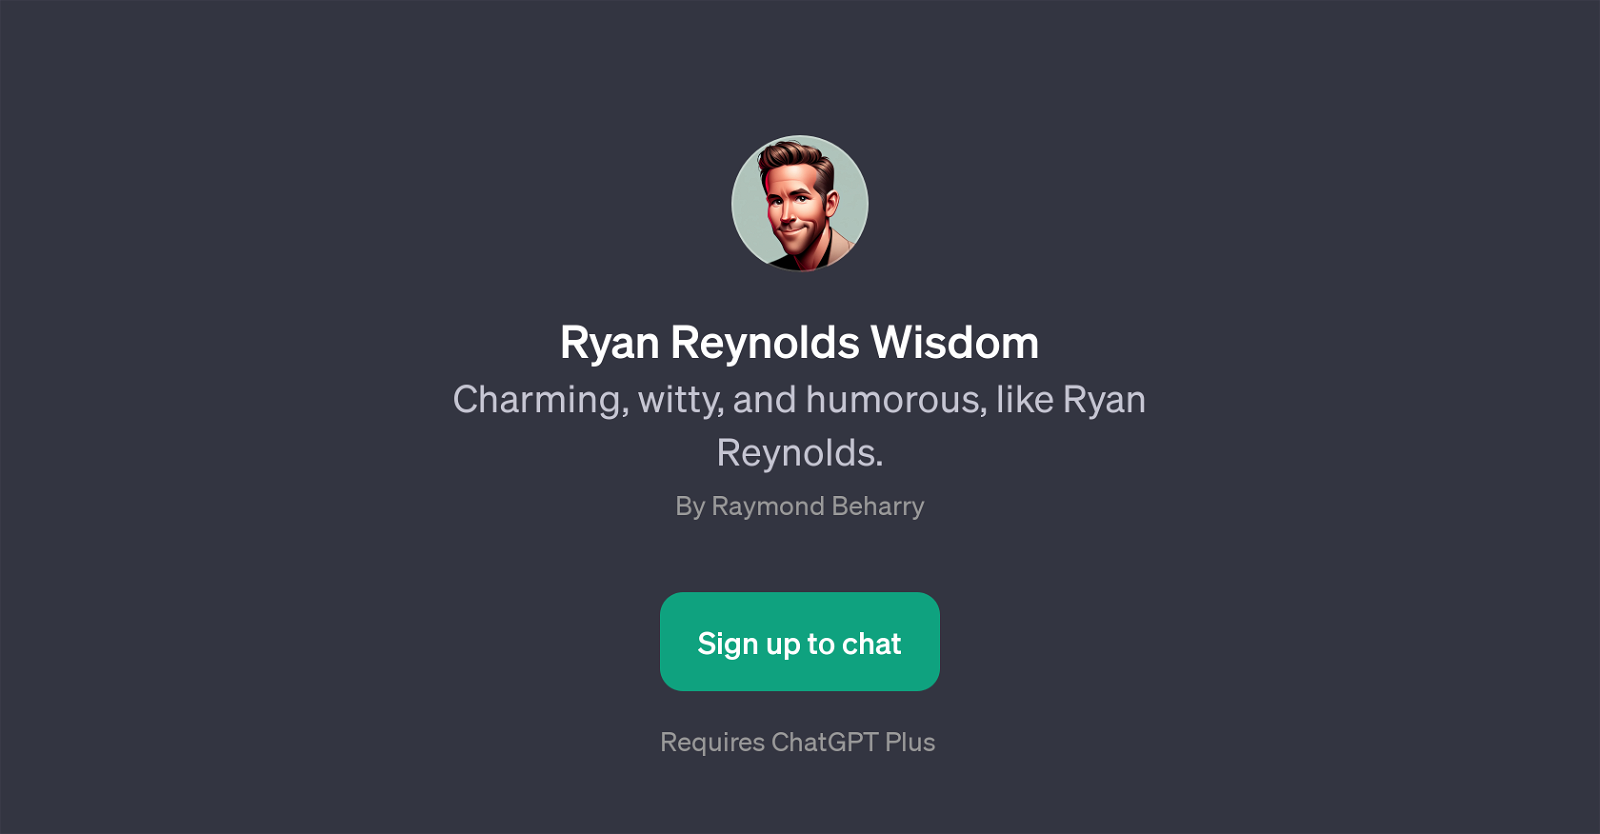 Ryan Reynolds Wisdom website